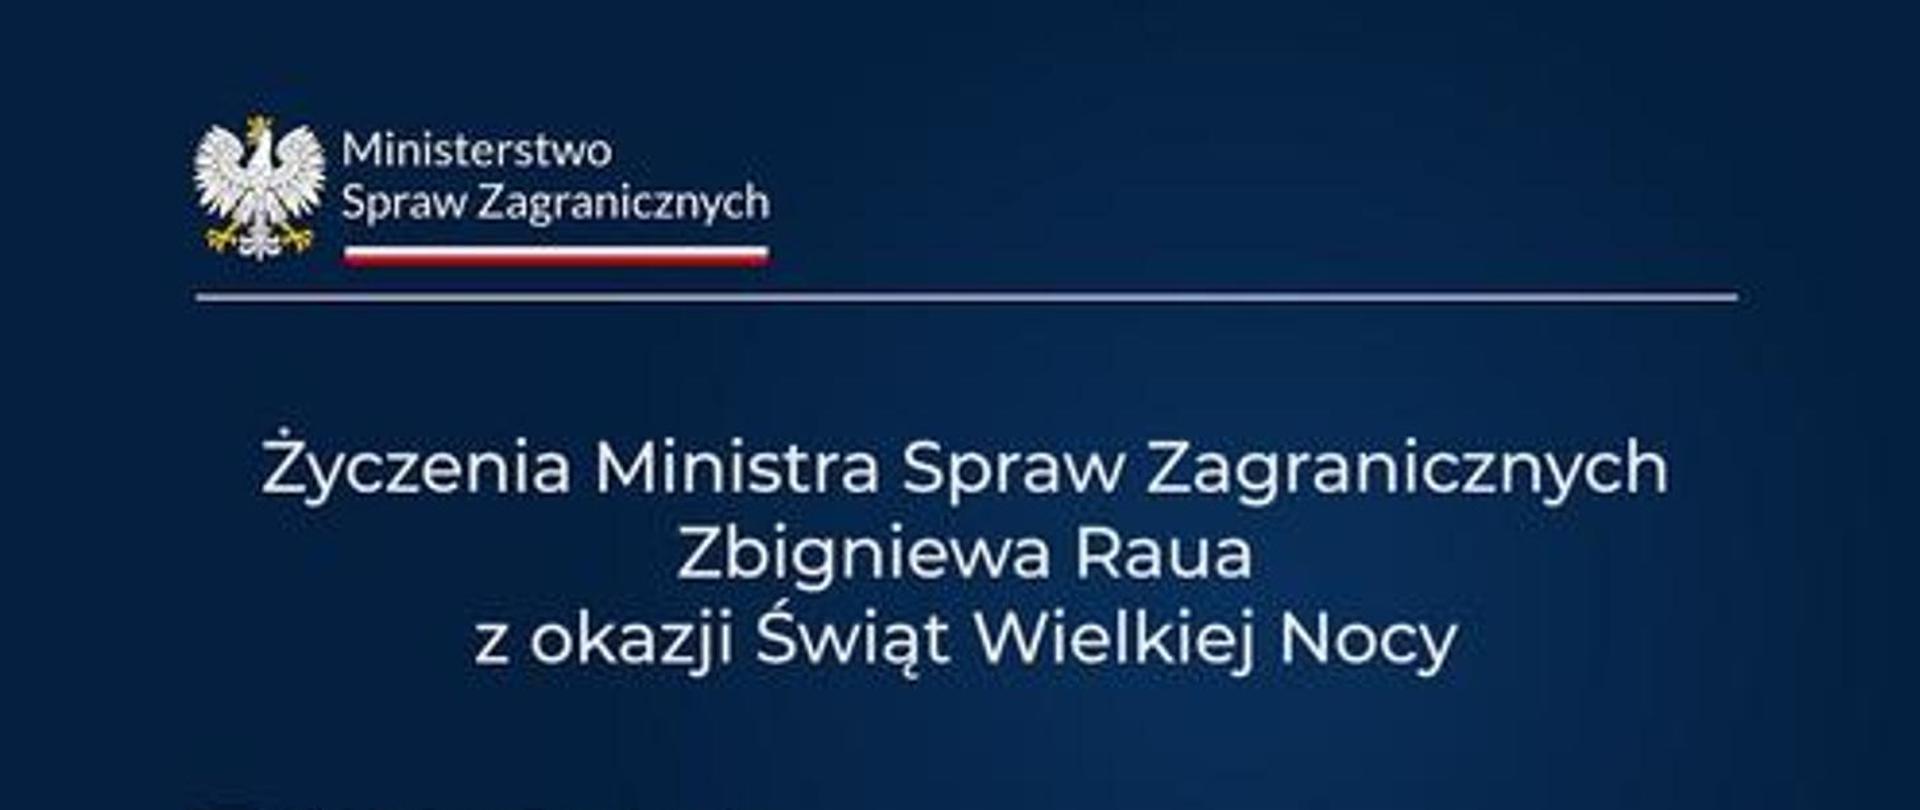 Życzenia Ministra Spraw Zagranicznych Zbigniewa Raua z okazji Swiąt Wielkanocnych